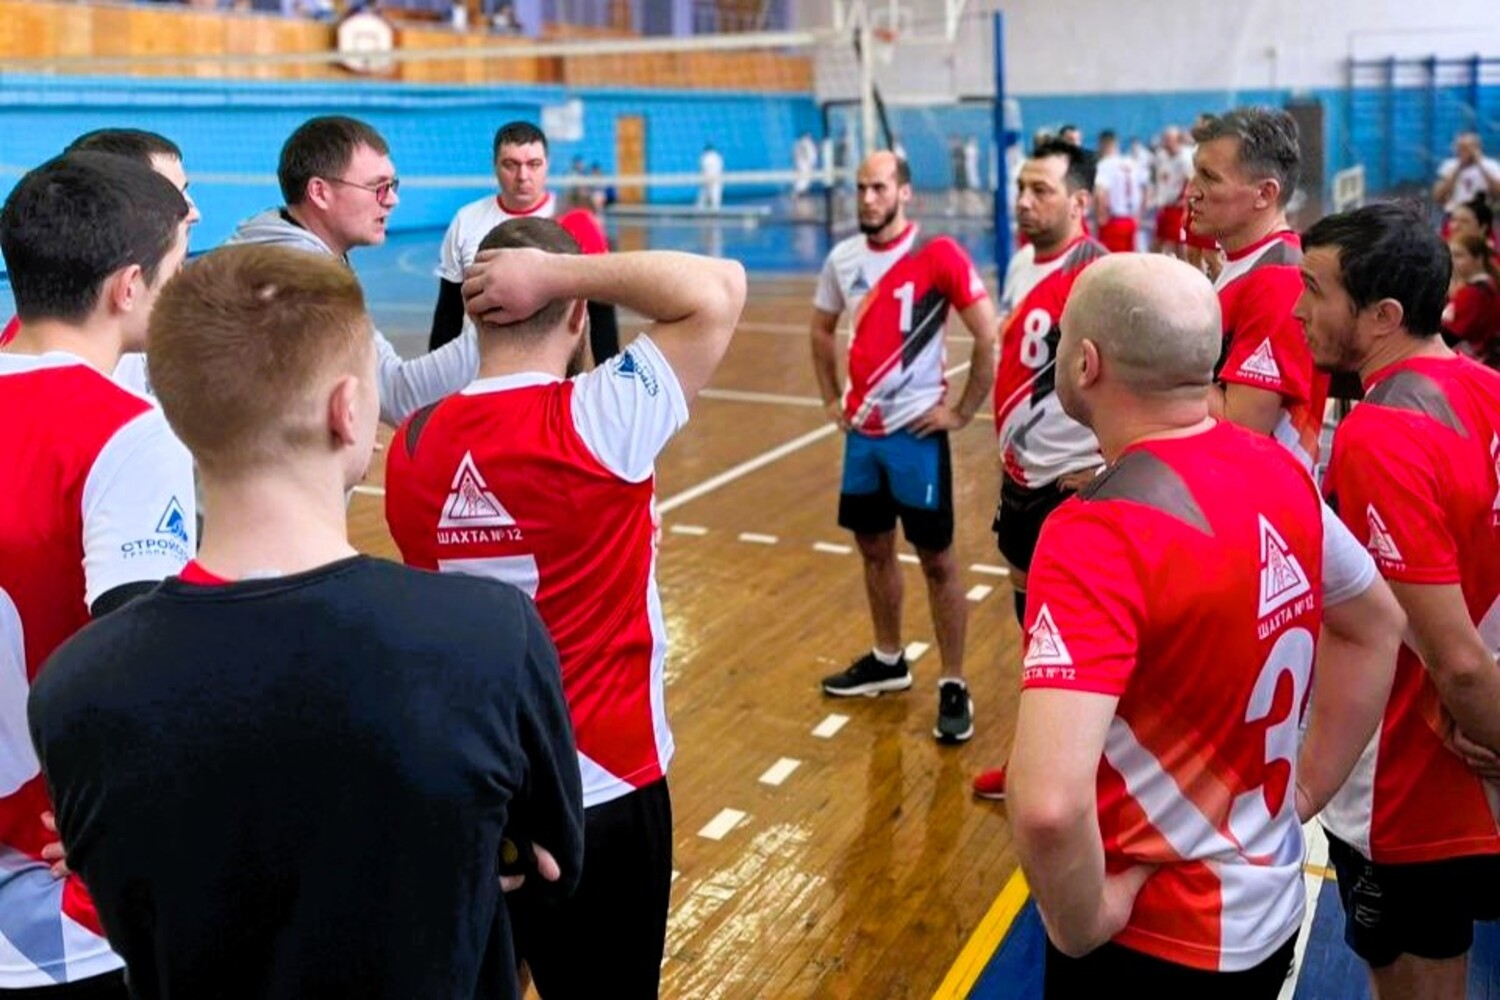 Шахта №12 заняла 1 место на турнире по волейболу среди предприятий Киселевского округа. Стройсервис